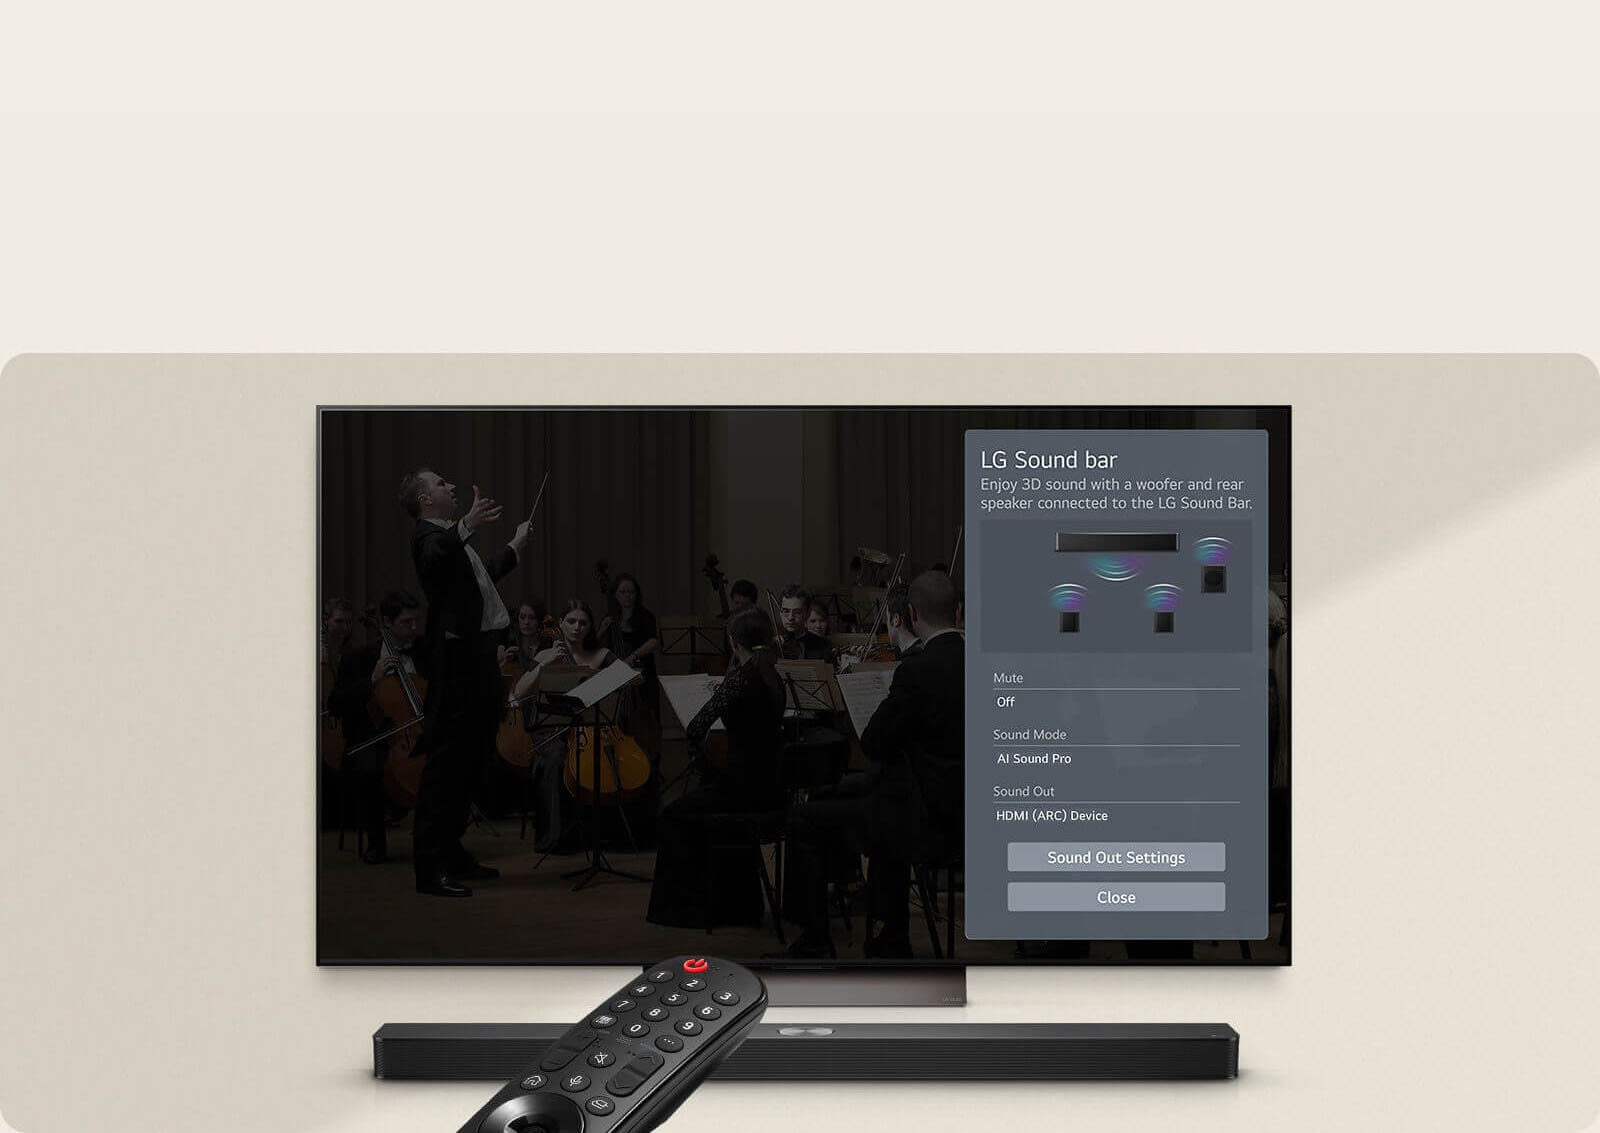 Die LG-Fernbedienung zeigt auf einen LG TV mit einer LG Soundbar darunter. Auf dem Bildschirm des LG TVs wird das Menü der WOW-Oberfläche angezeigt.